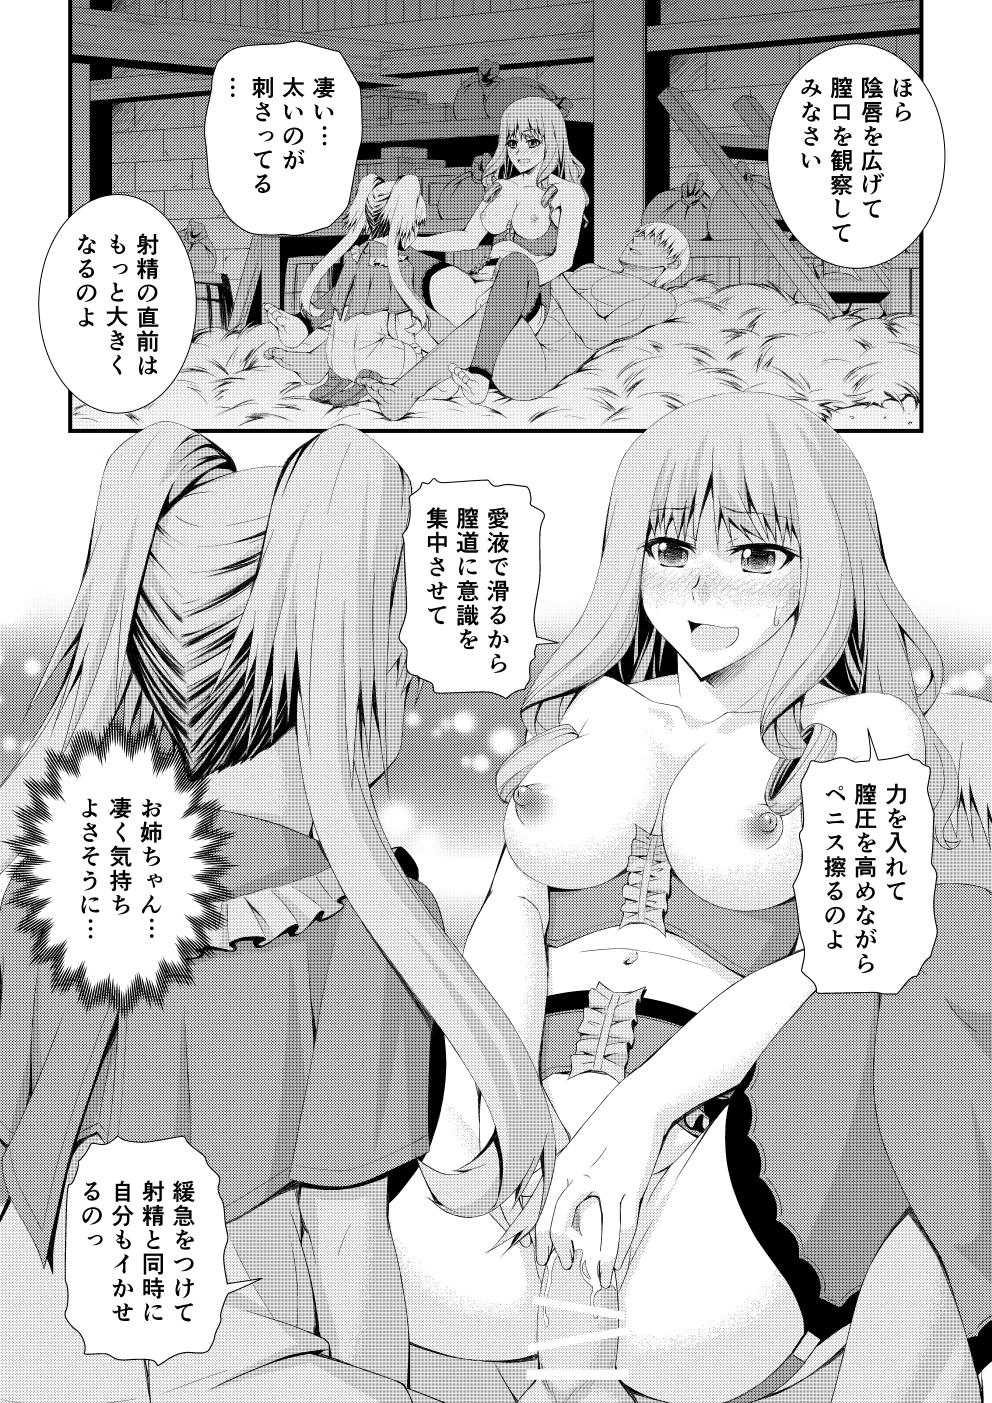 Shinsaku Doujin Muryou Manga 32P 14